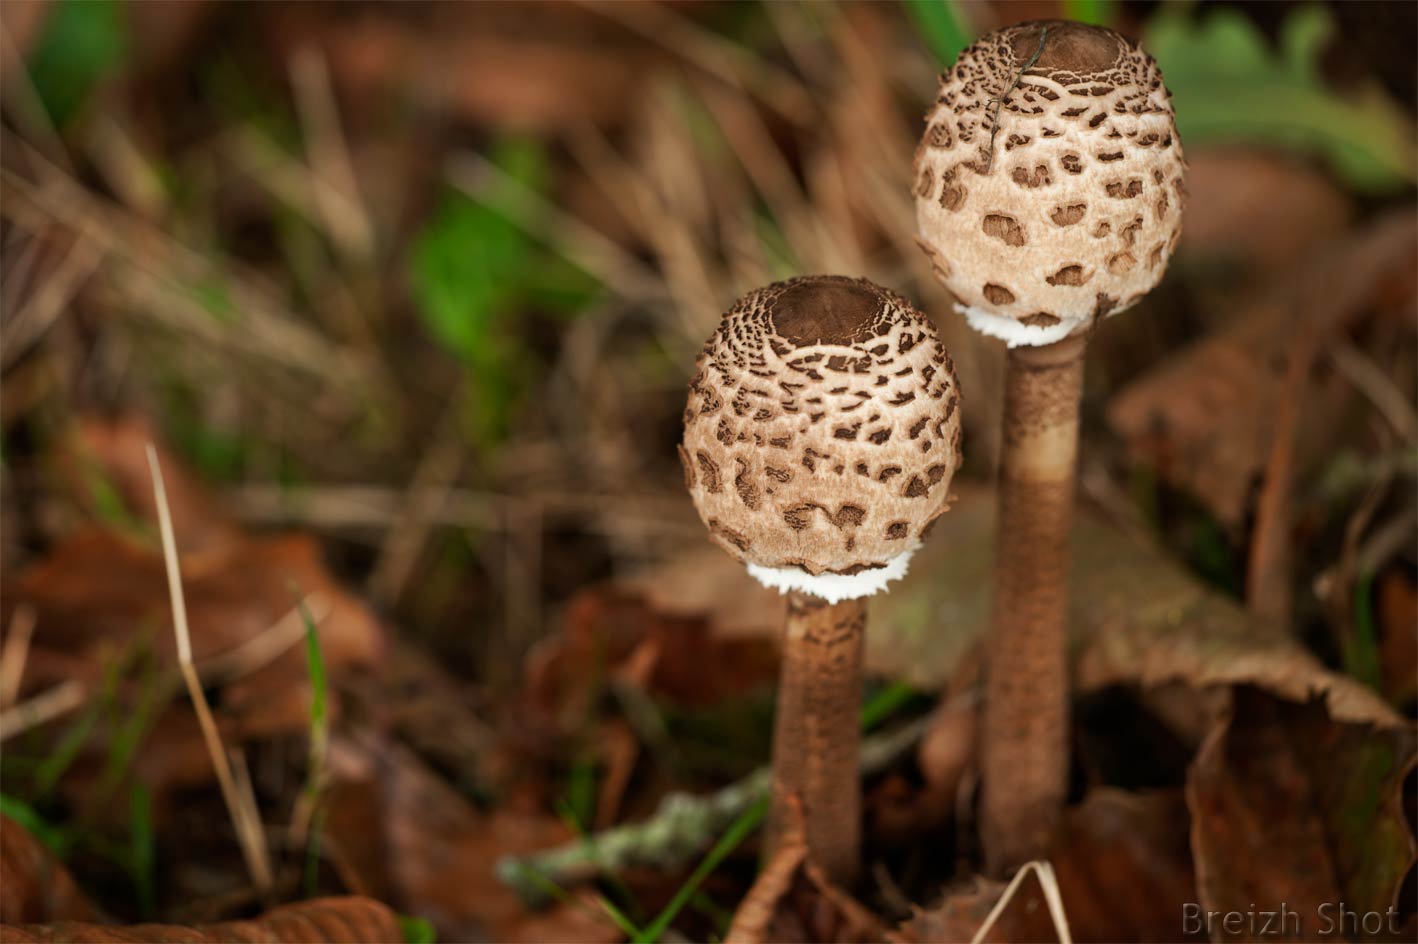 La coulemelle ce beau et délicieux champignon - Photos 2 Breizh